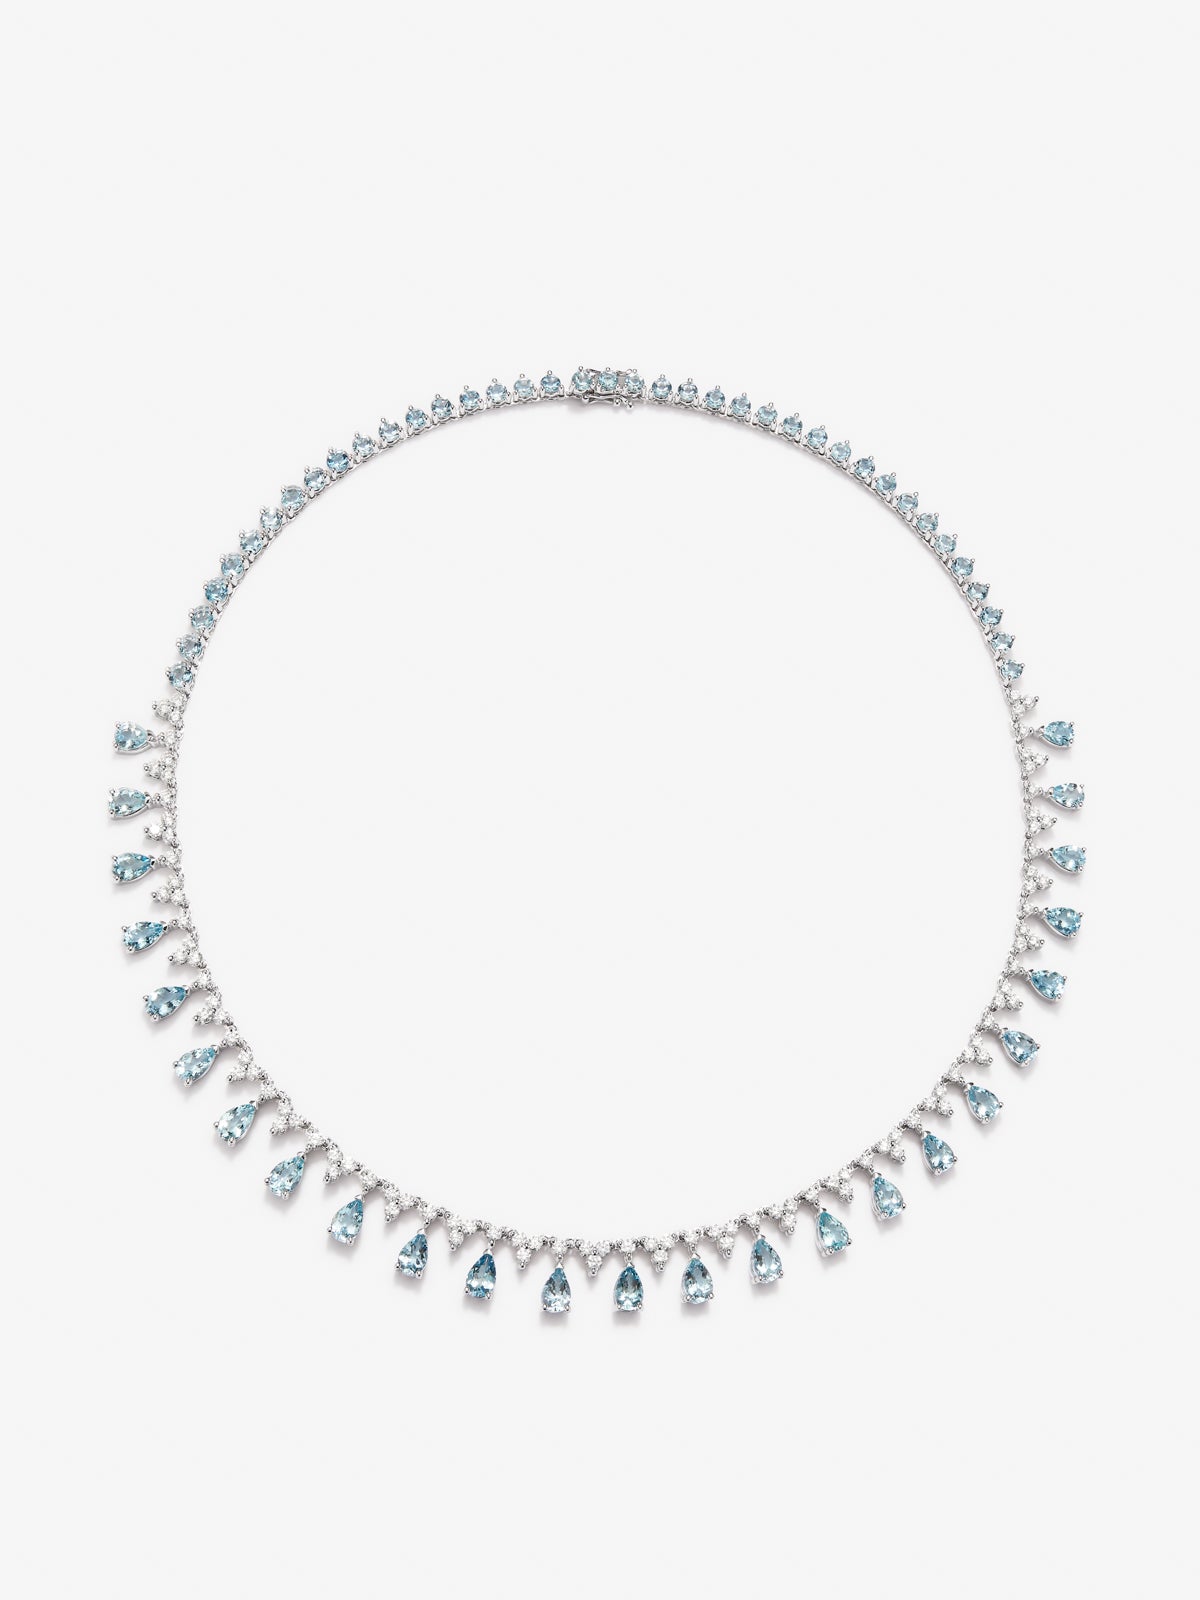 Collar rivière de oro blanco de 18K con aguamarinas azules en talla pera y brillante de 14,19 cts y diamantes blancos en talla brillante de 3,82 cts